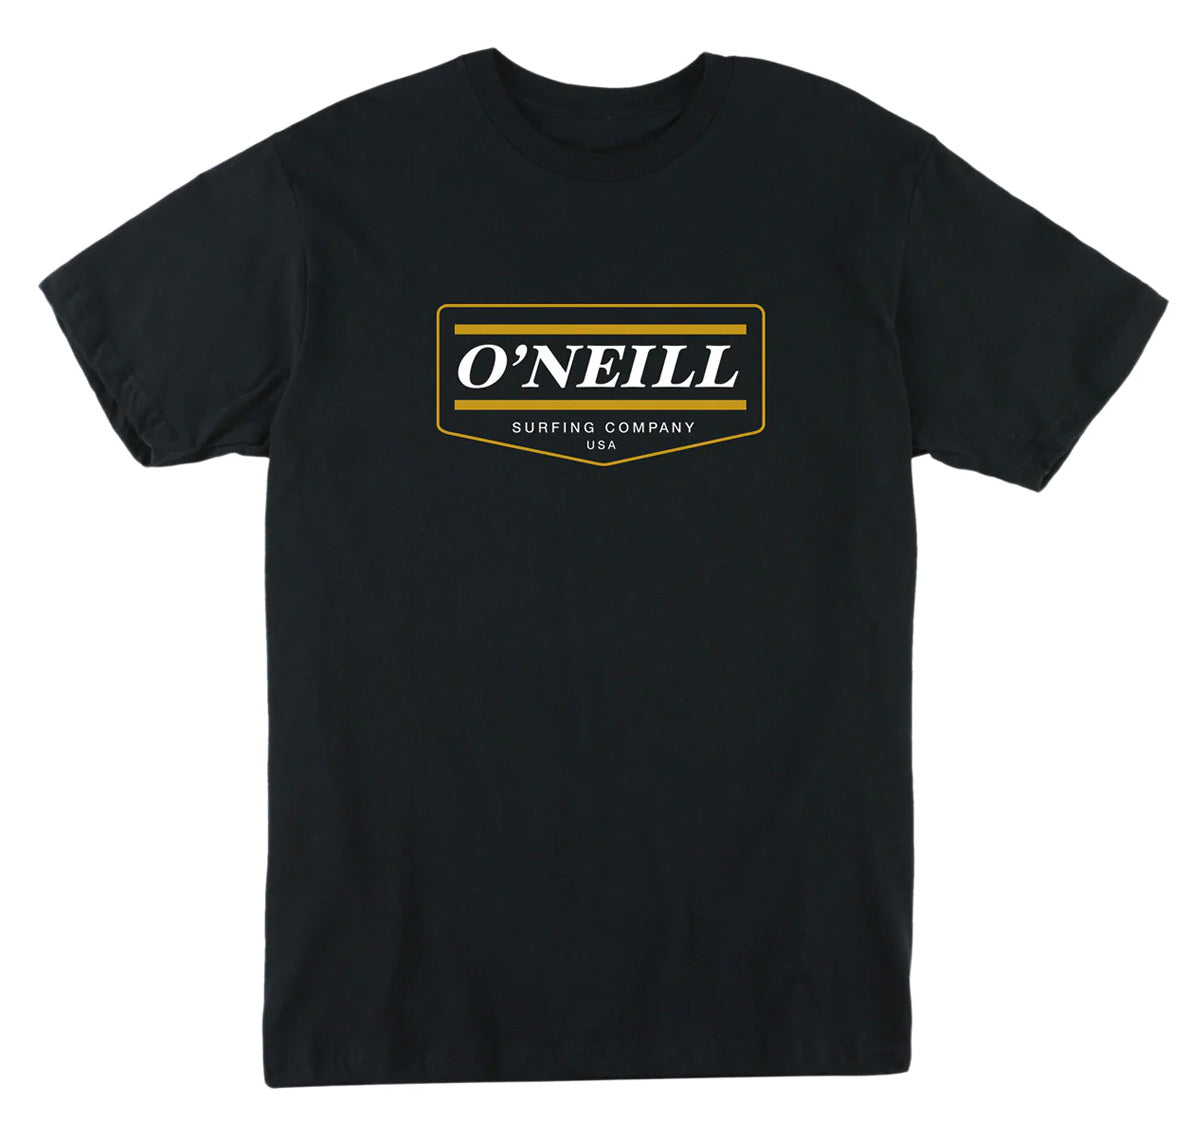 
O'Neill Mover Youth Boys Short-Sleeve Shirts 